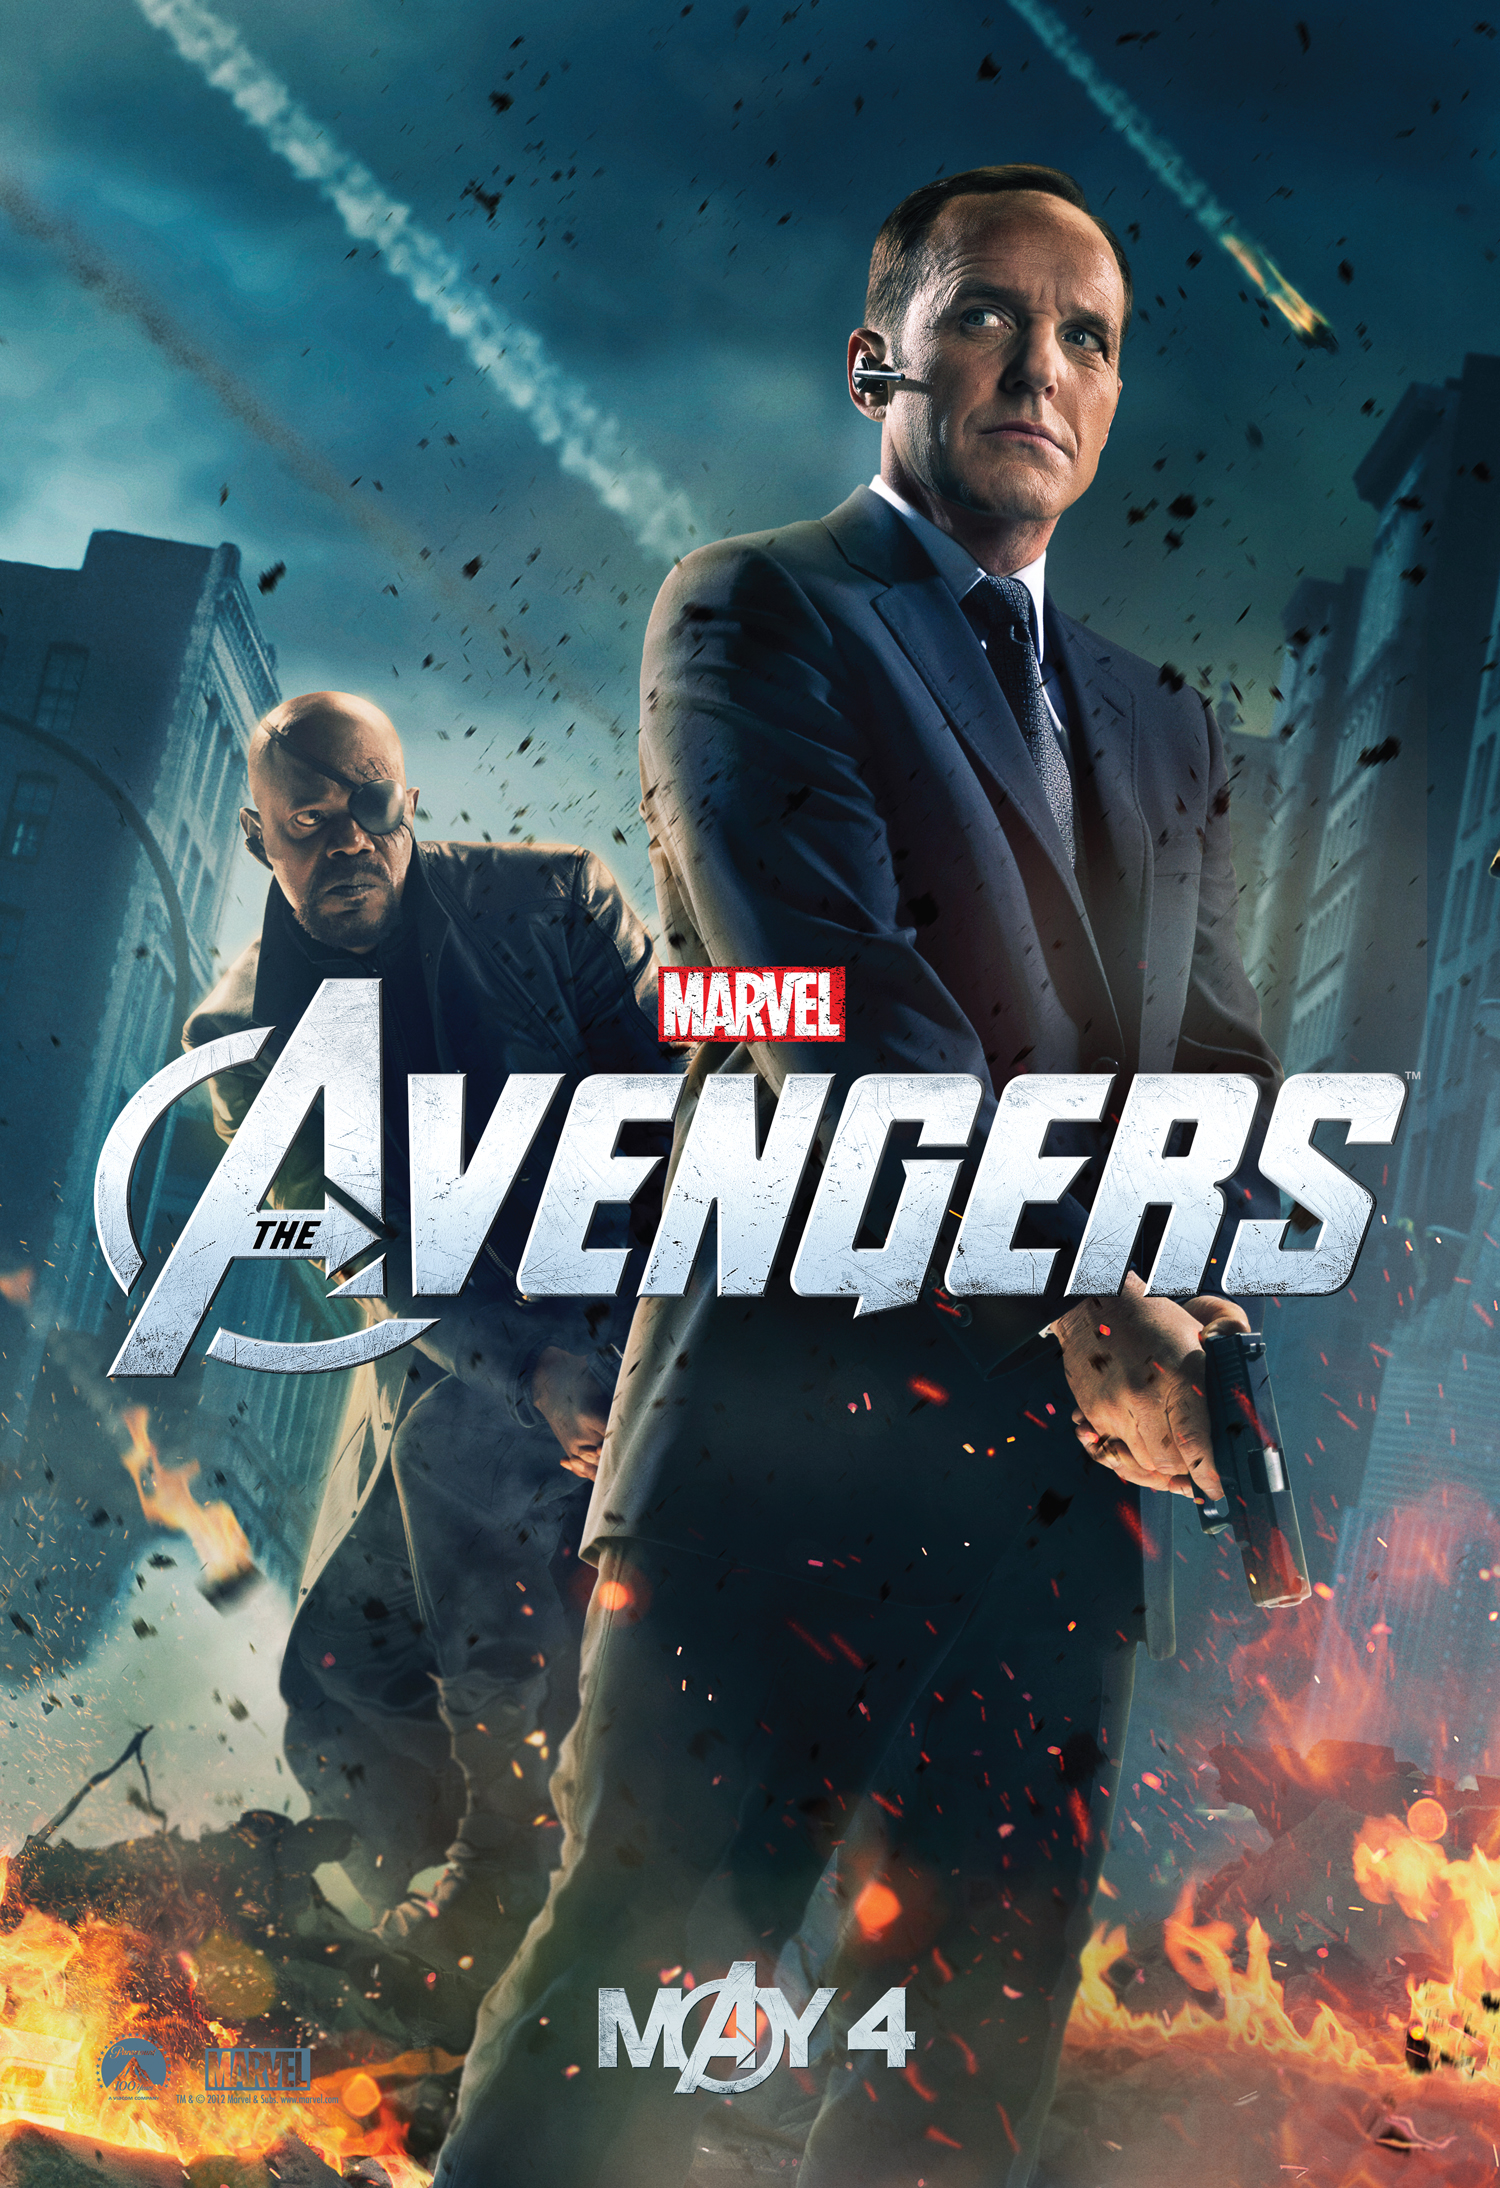 the-avengers-clark-gregg-agent-coulson-poster.jpg